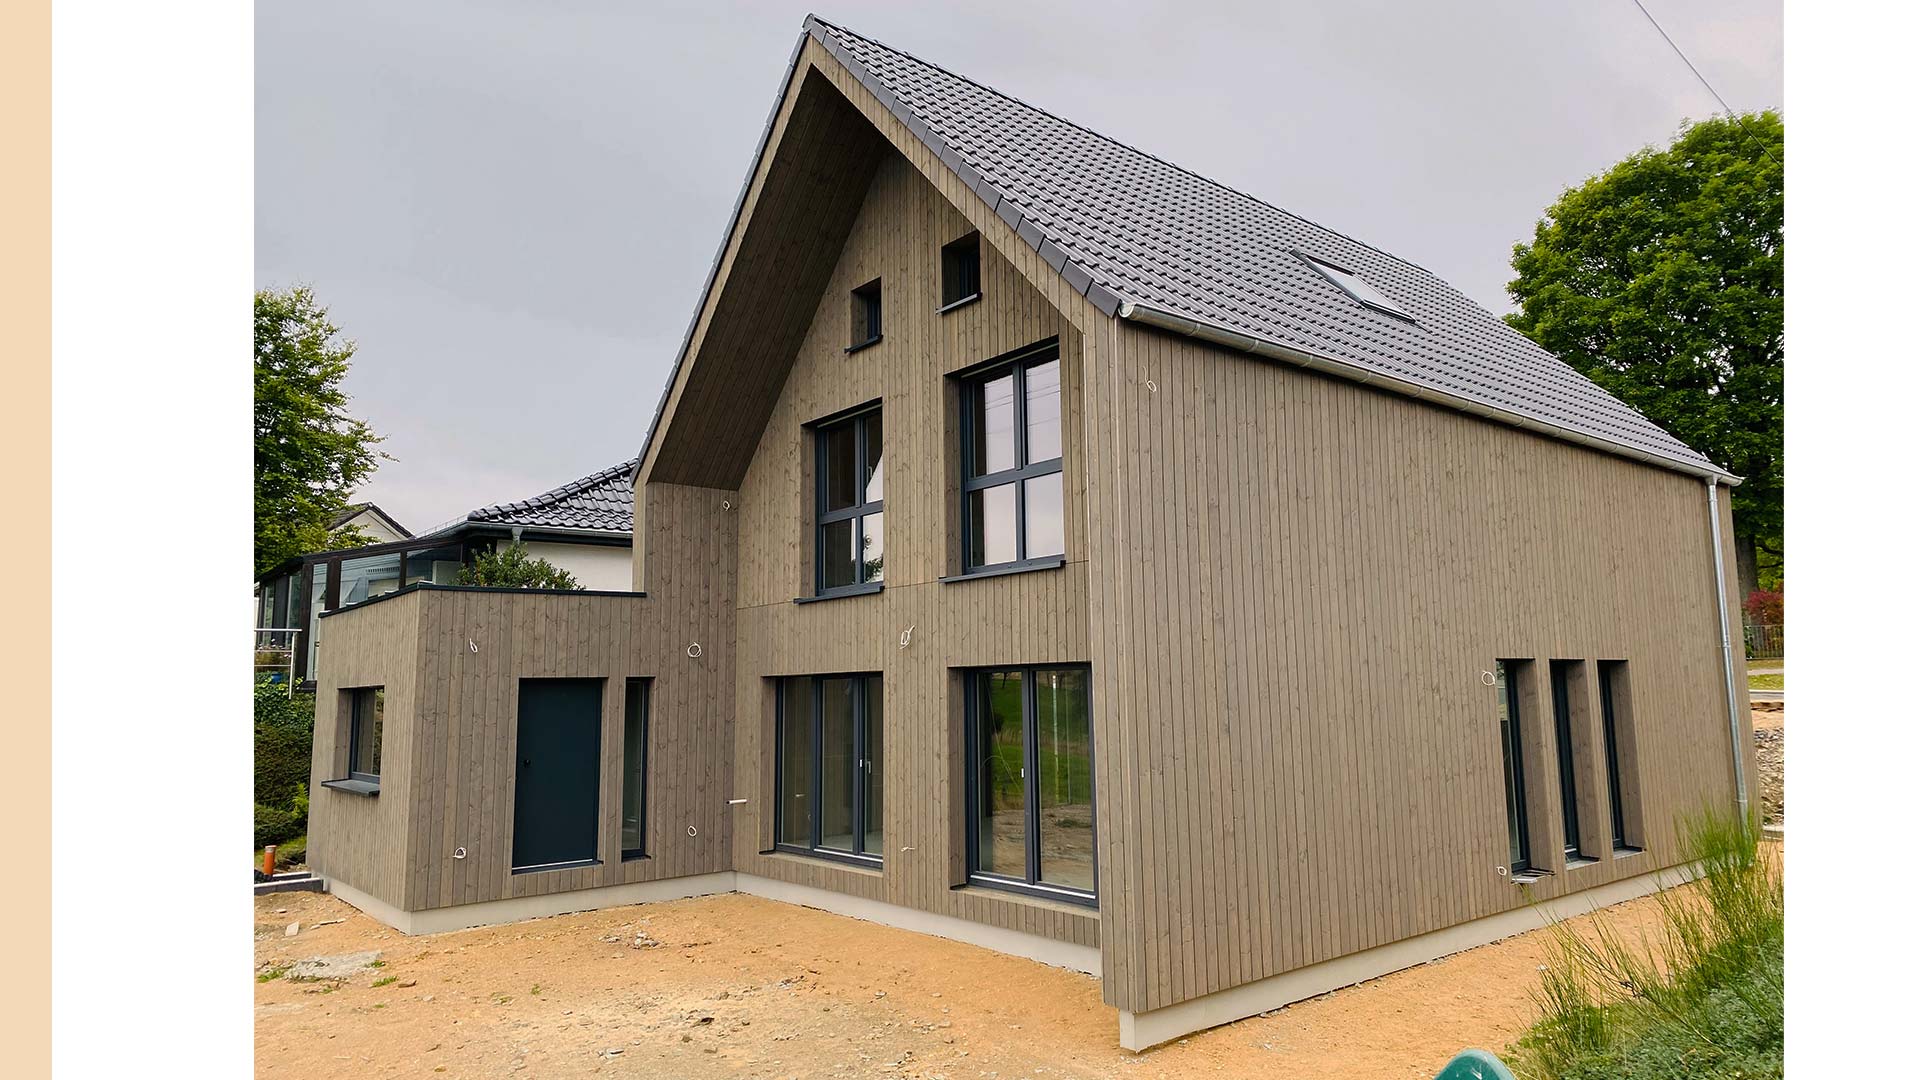 Holzhaus mit Garage und Holzfassade in Holzständer Bauweise